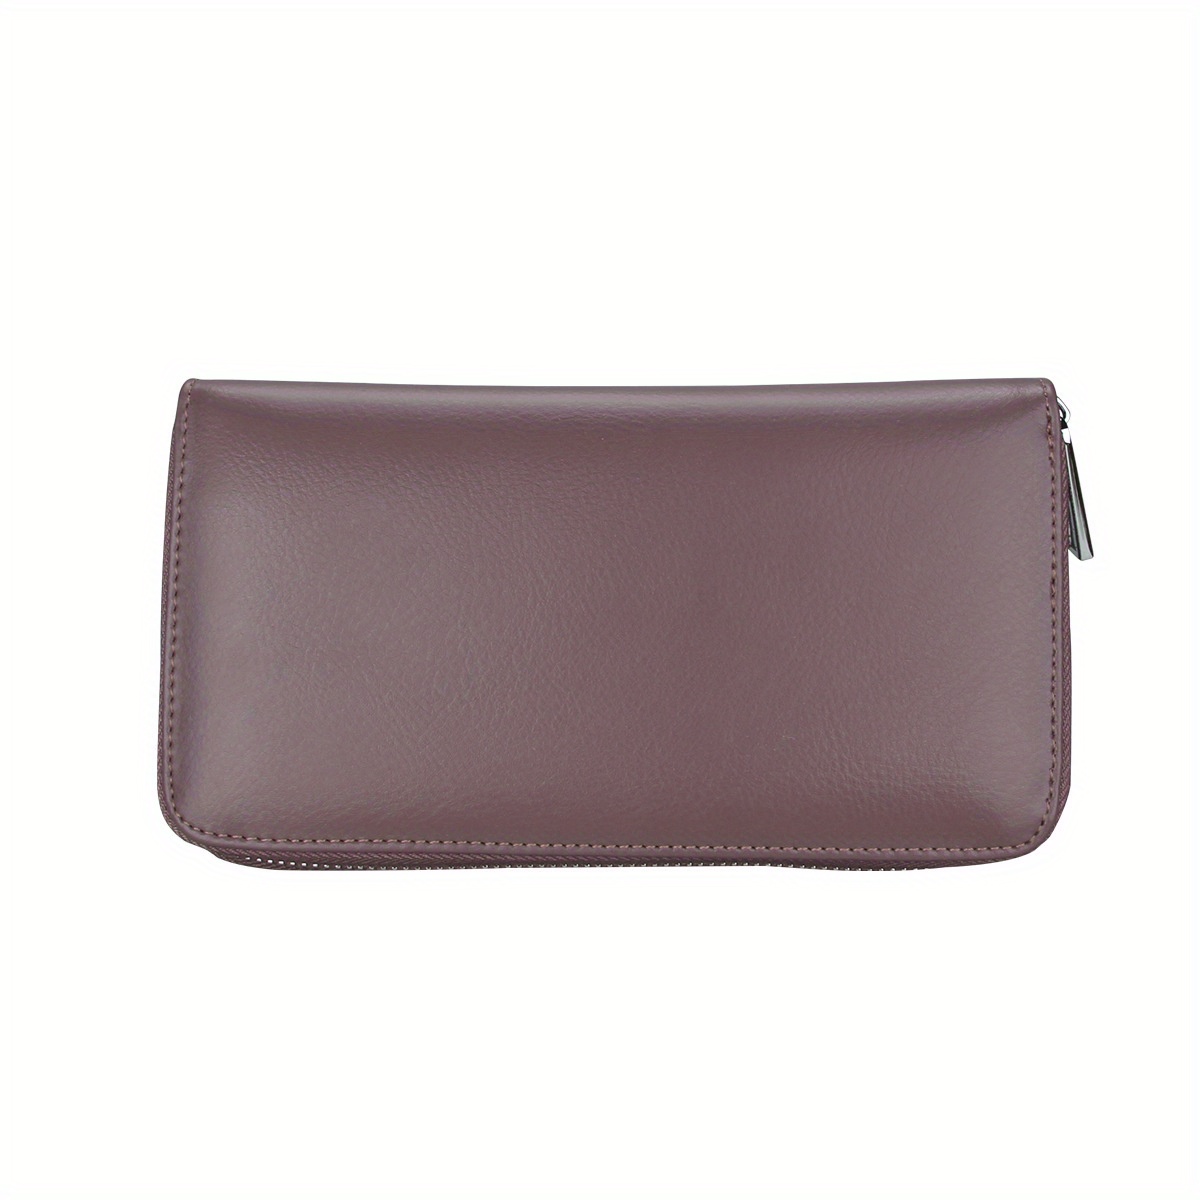 Quality Genuine Leather Wallets Ultrathin Long Slim Men Wallet Men's Purple